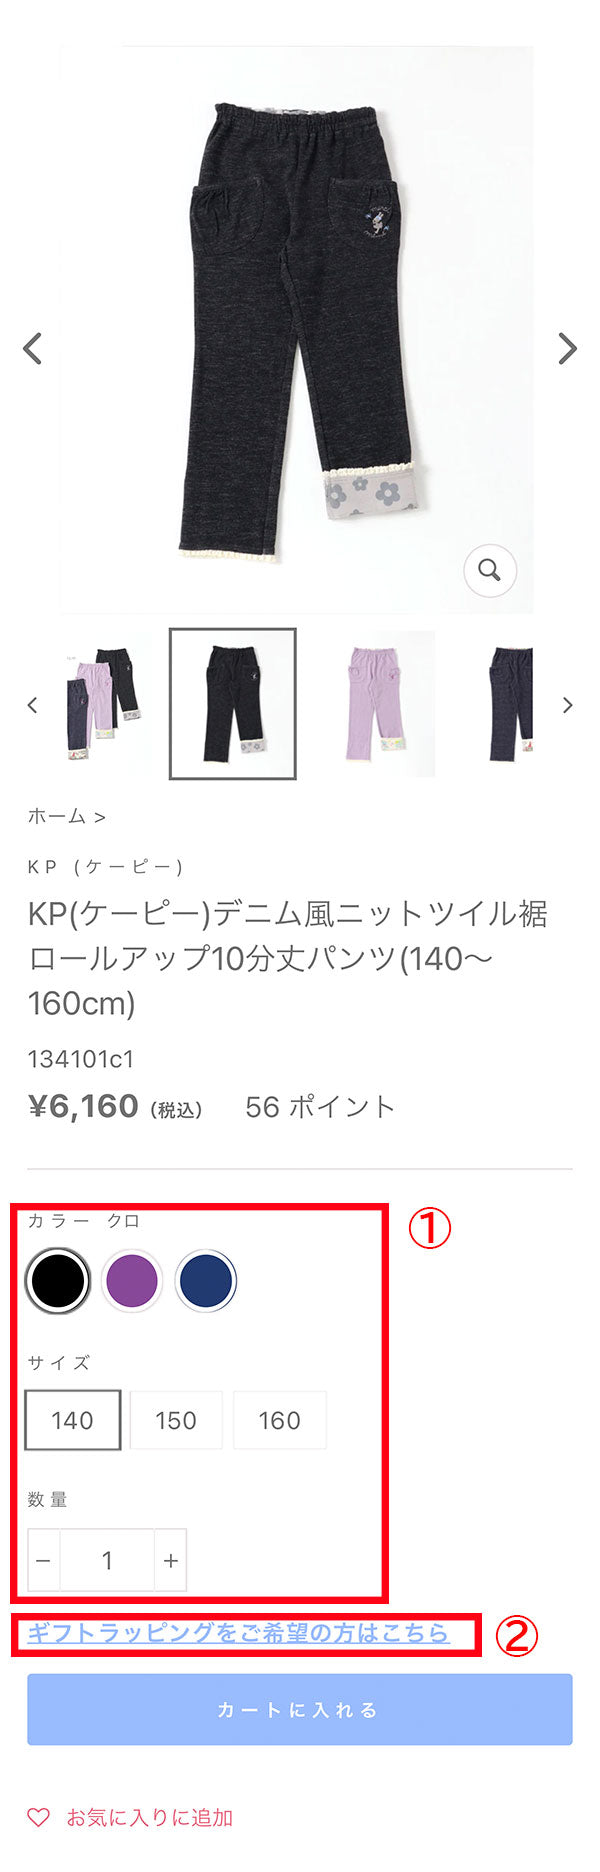 ご利用ガイド – KP(ケーピー) 公式サイト